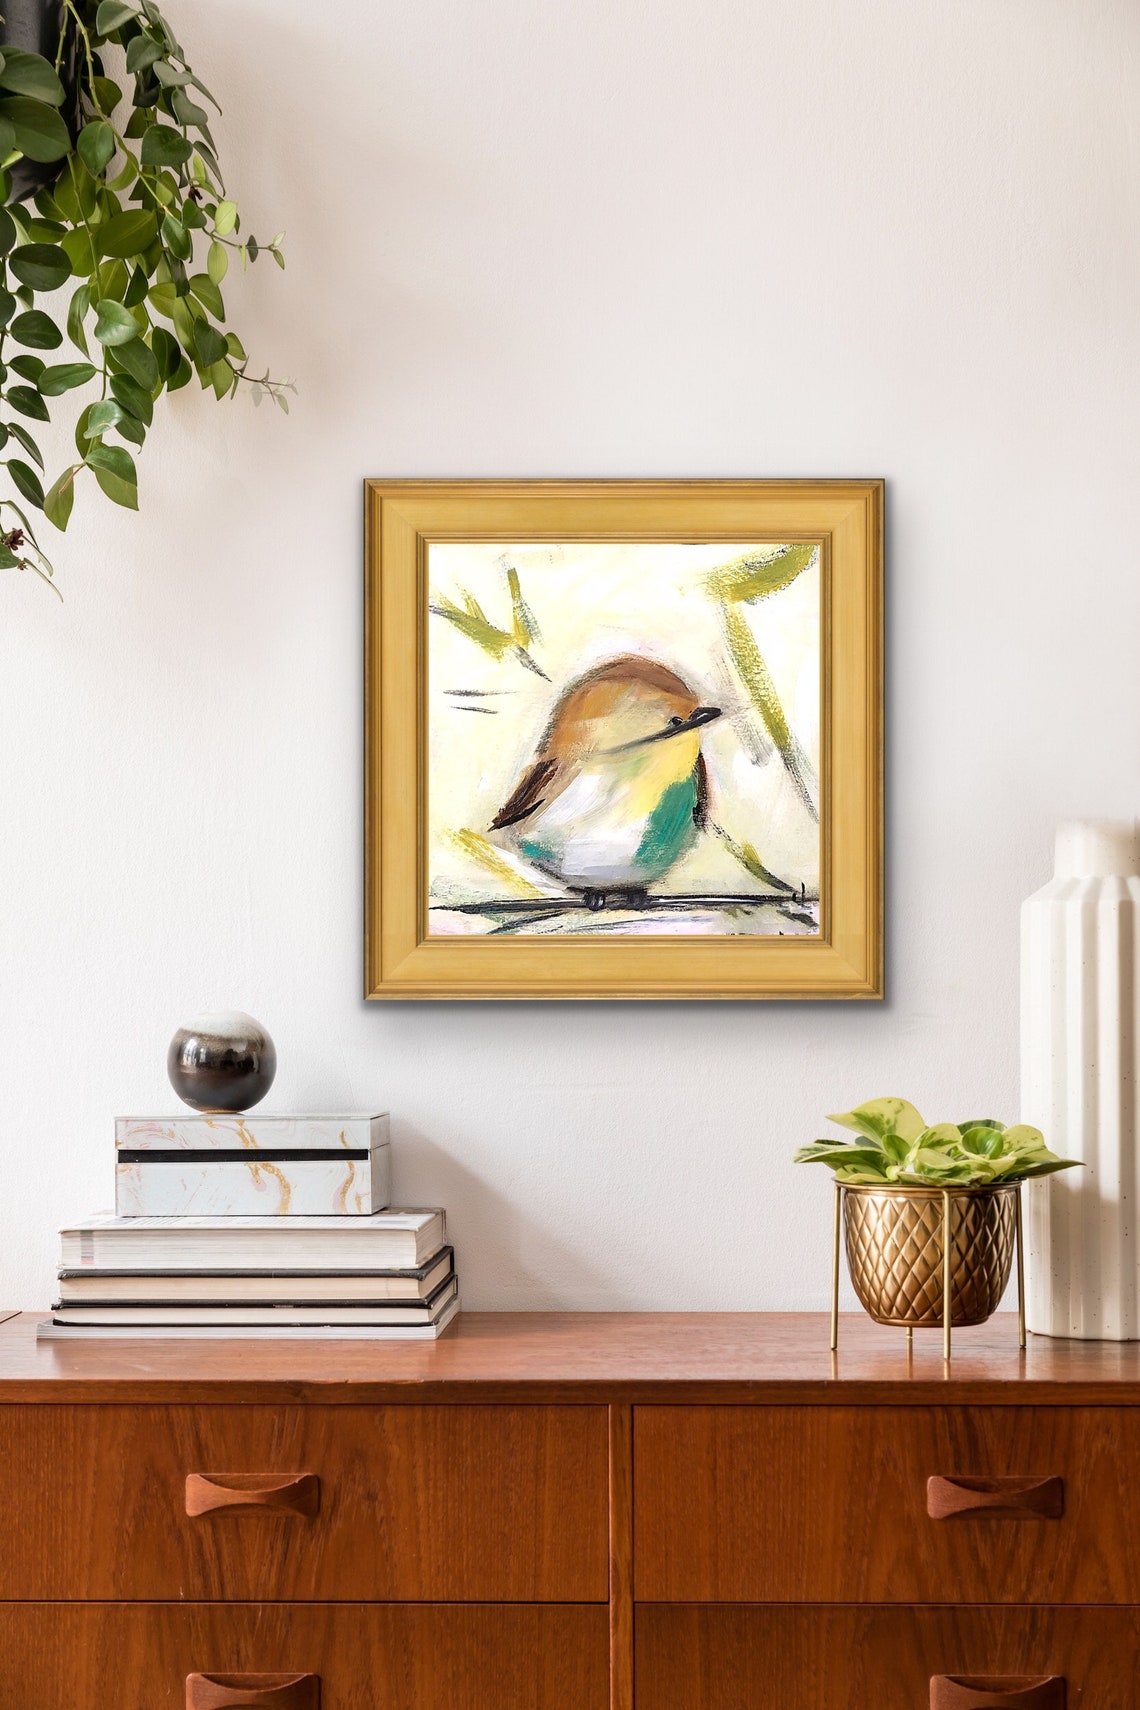 Wrens Wren Art Bird Painting Bird Print Abstract Art | Etsy